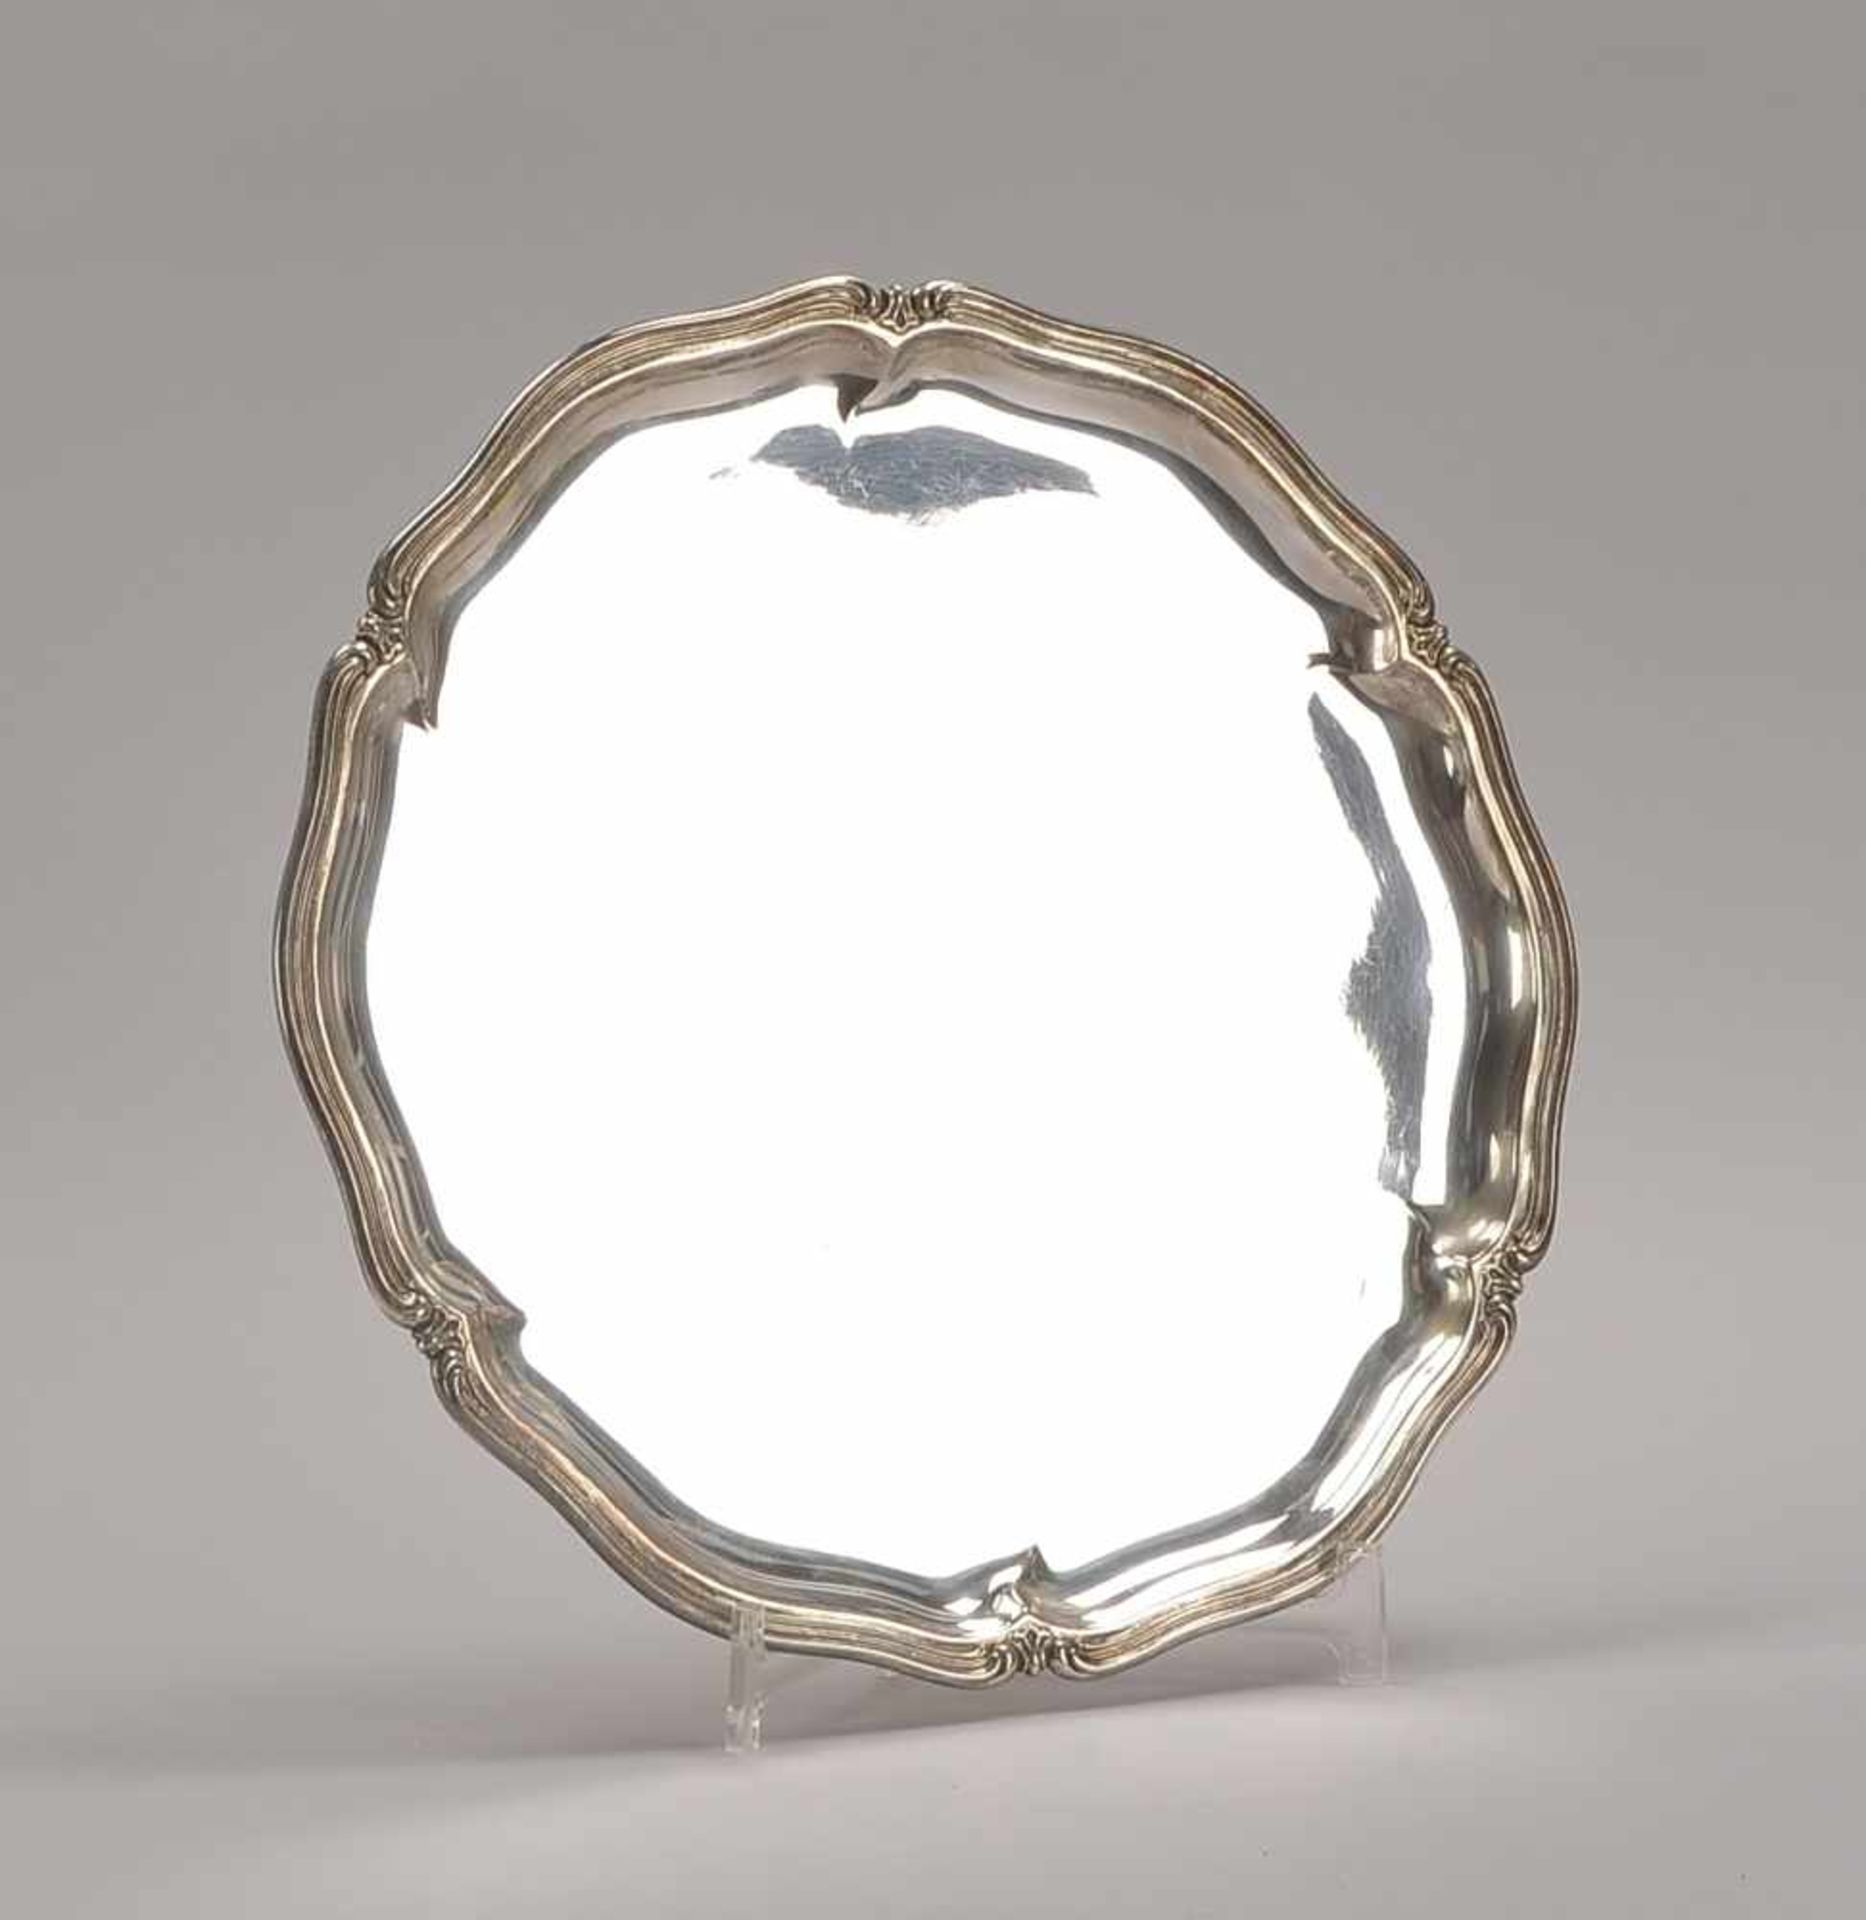 Silbertablett, 830 Wilkens-Silber (punziert); Durchmesser Ø 33 cm